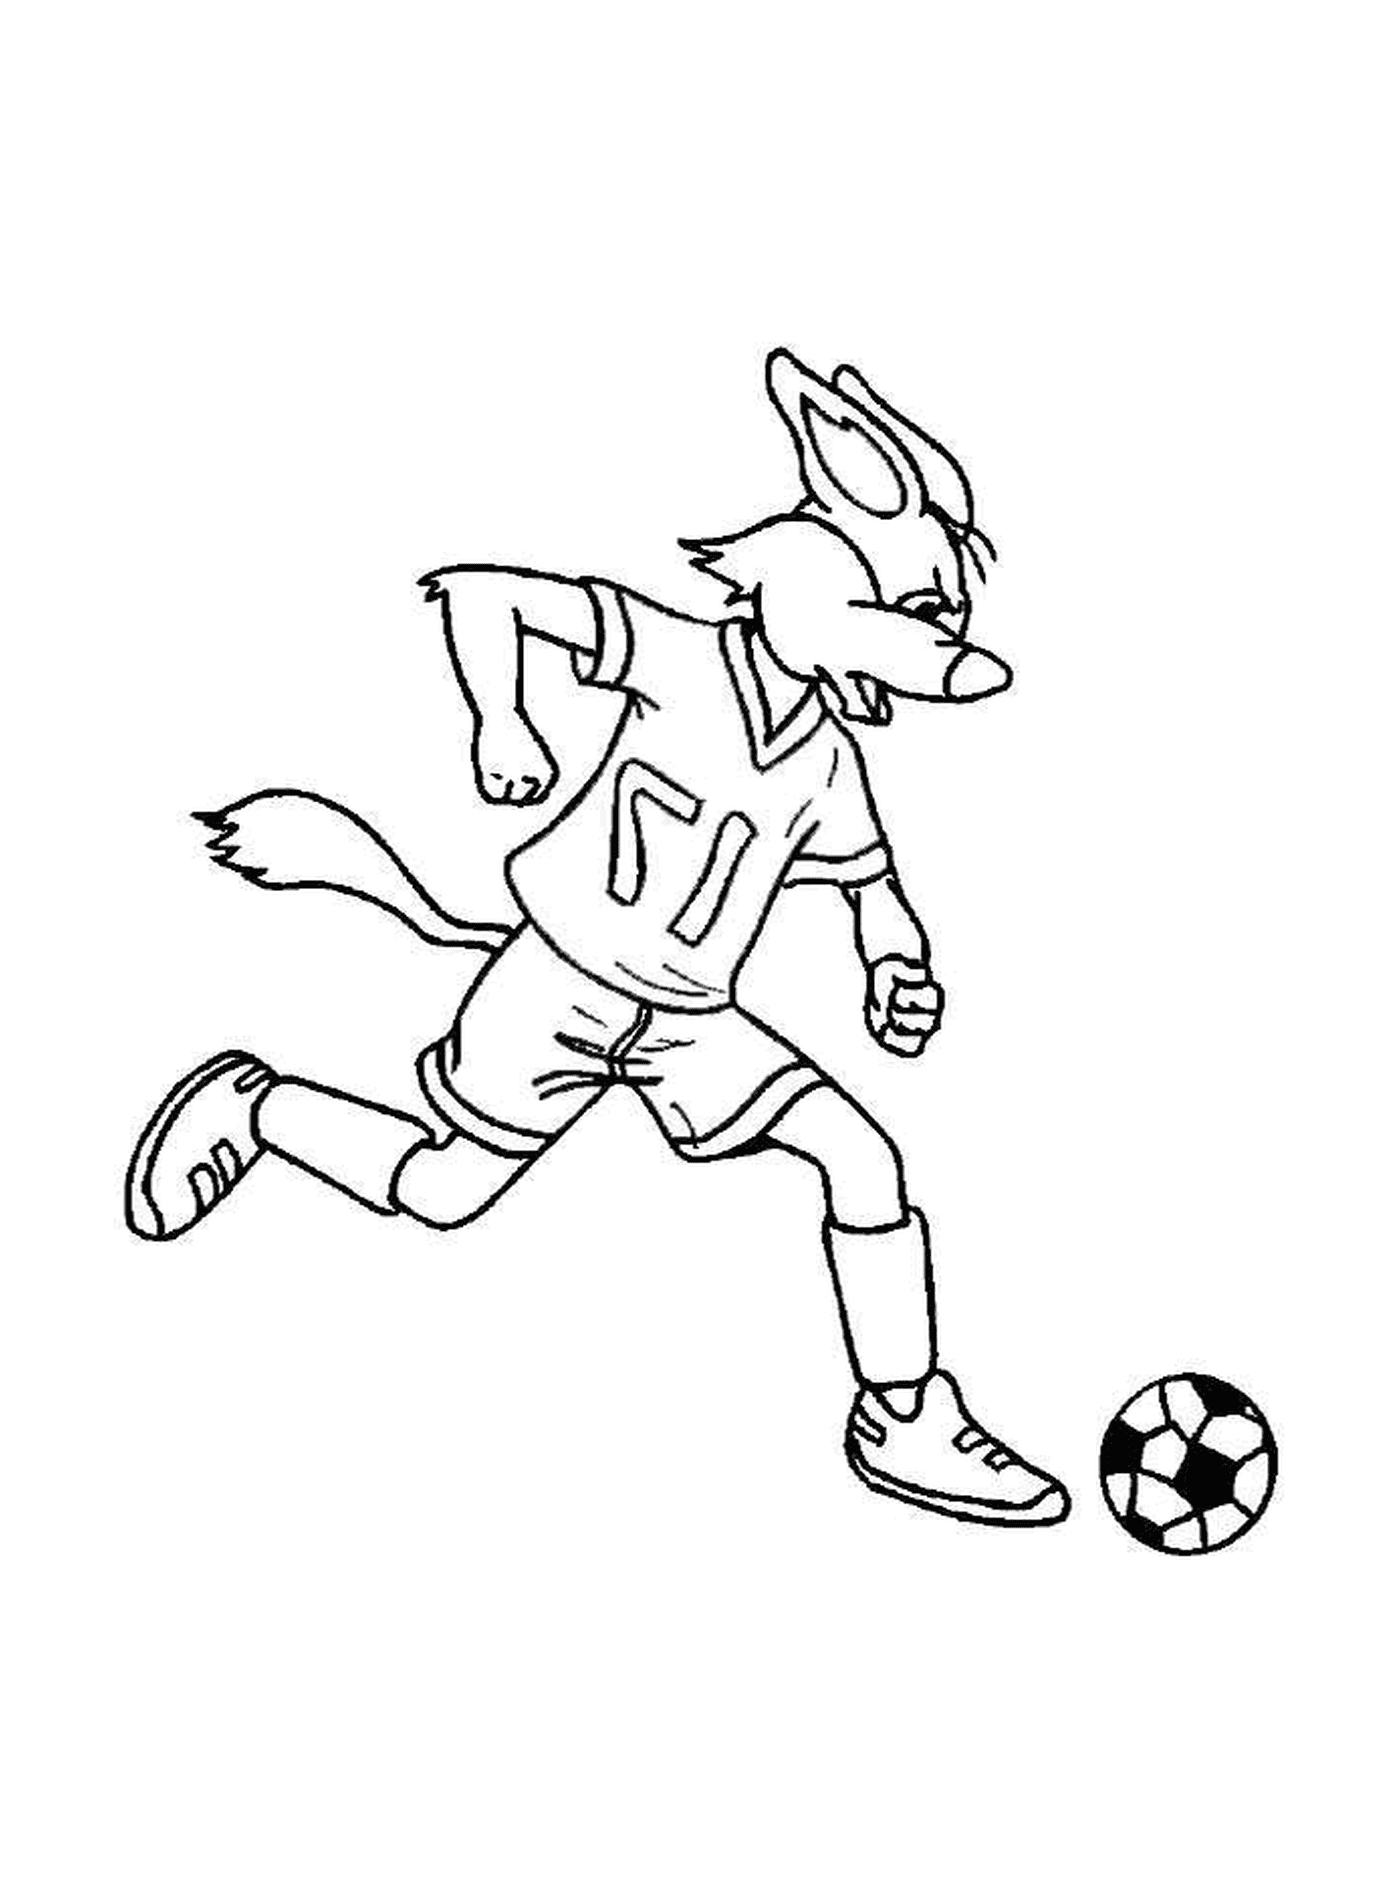   Un lapin joue au foot 